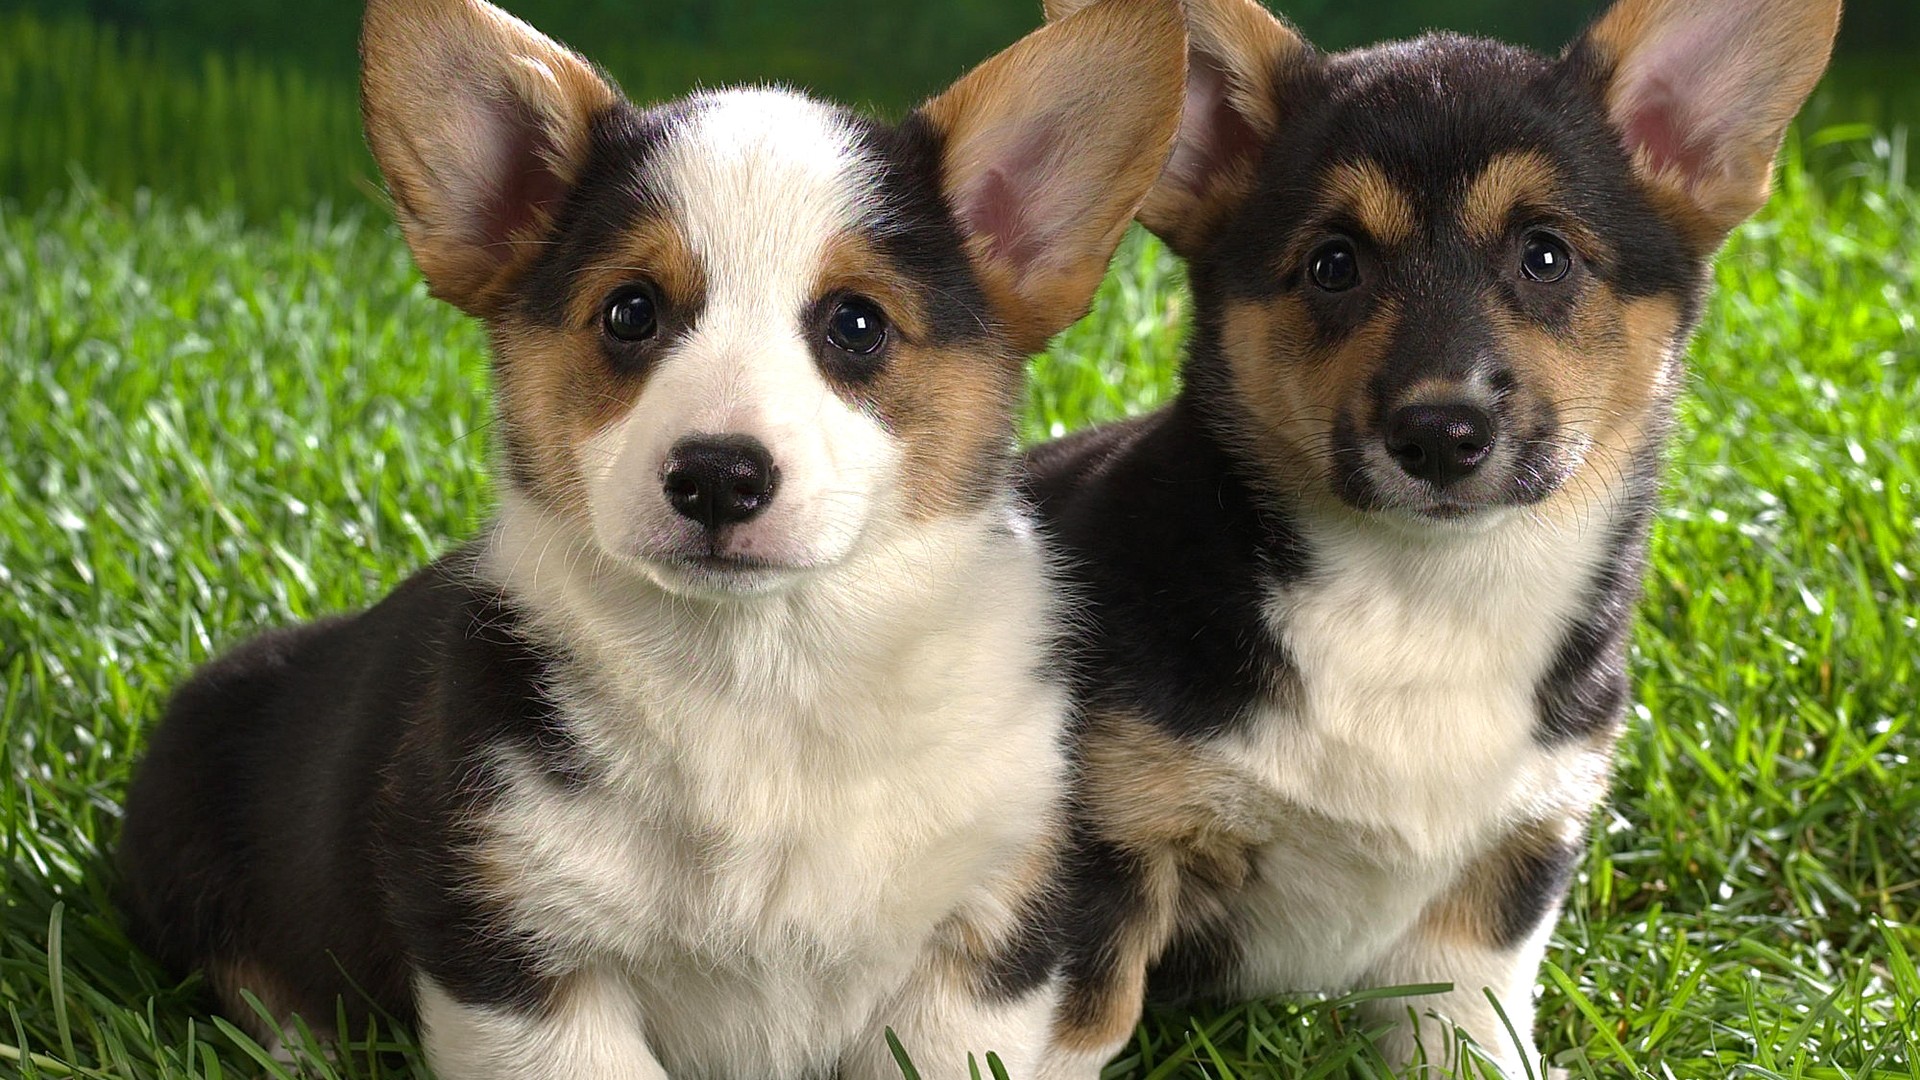 小狗,耳朵,两只,绿草地,凝望着你,动物壁纸